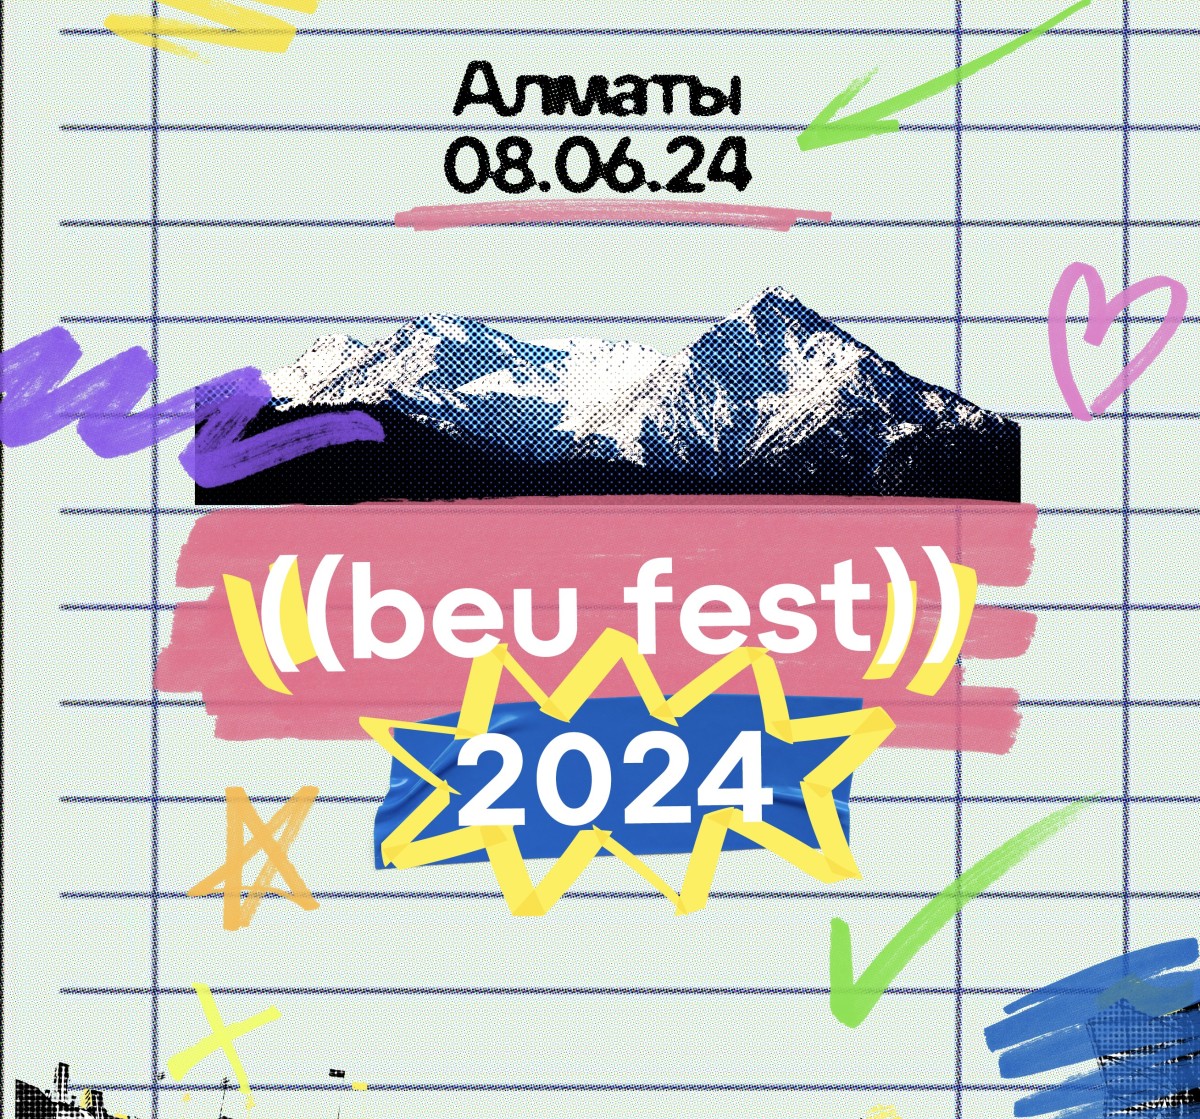 Новая Традиция Новой Музыки: Beu Fest 2024 Возвращается в Алматы